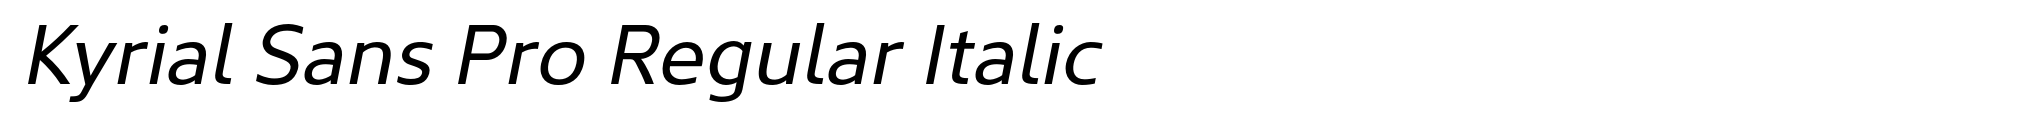 Kyrial Sans Pro Regular Italic image